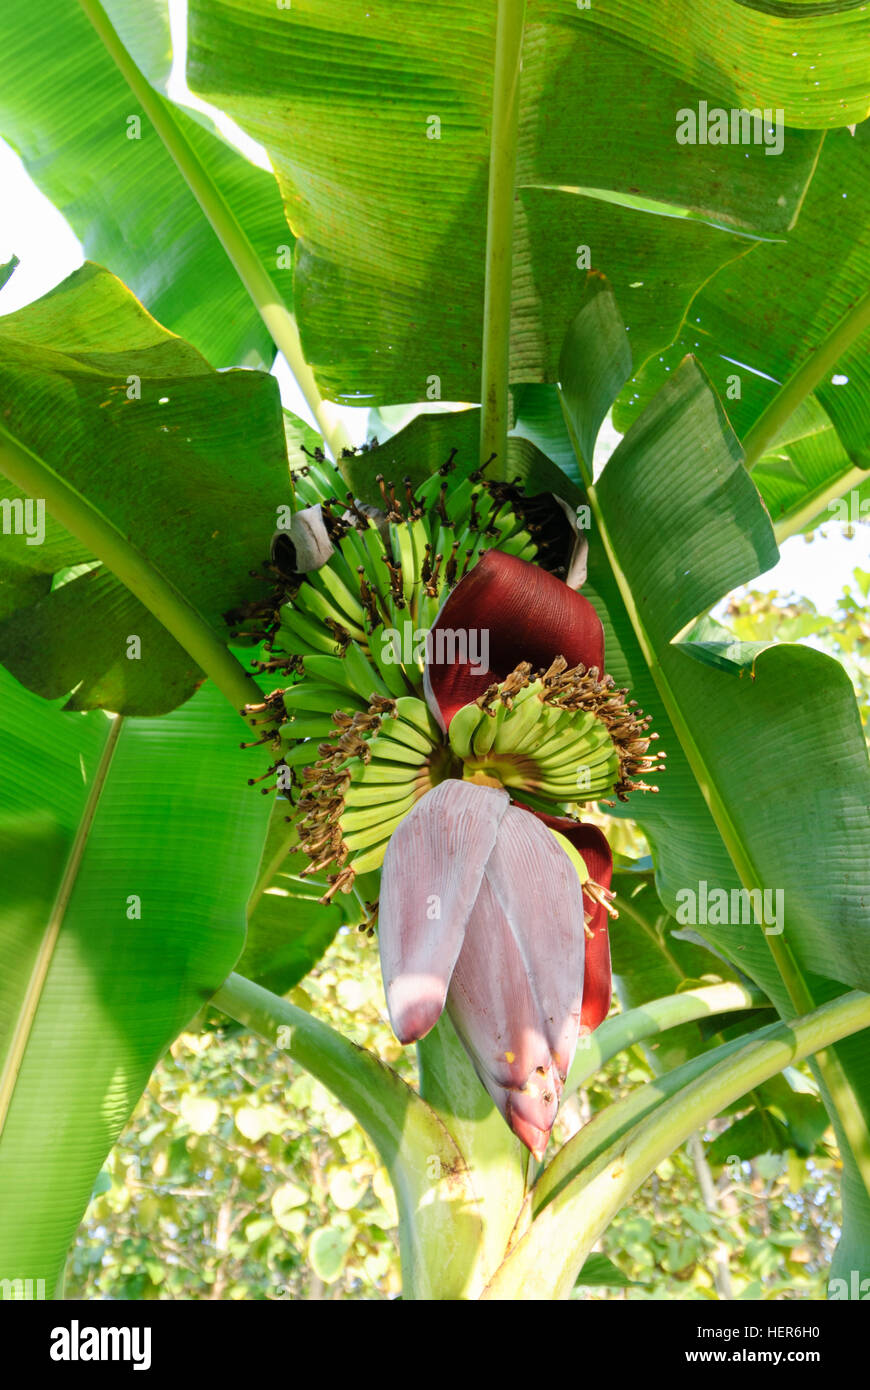 Bandarban: Banana tree with fruits and flower, Chittagong Division, Bangladesh Stock Photo